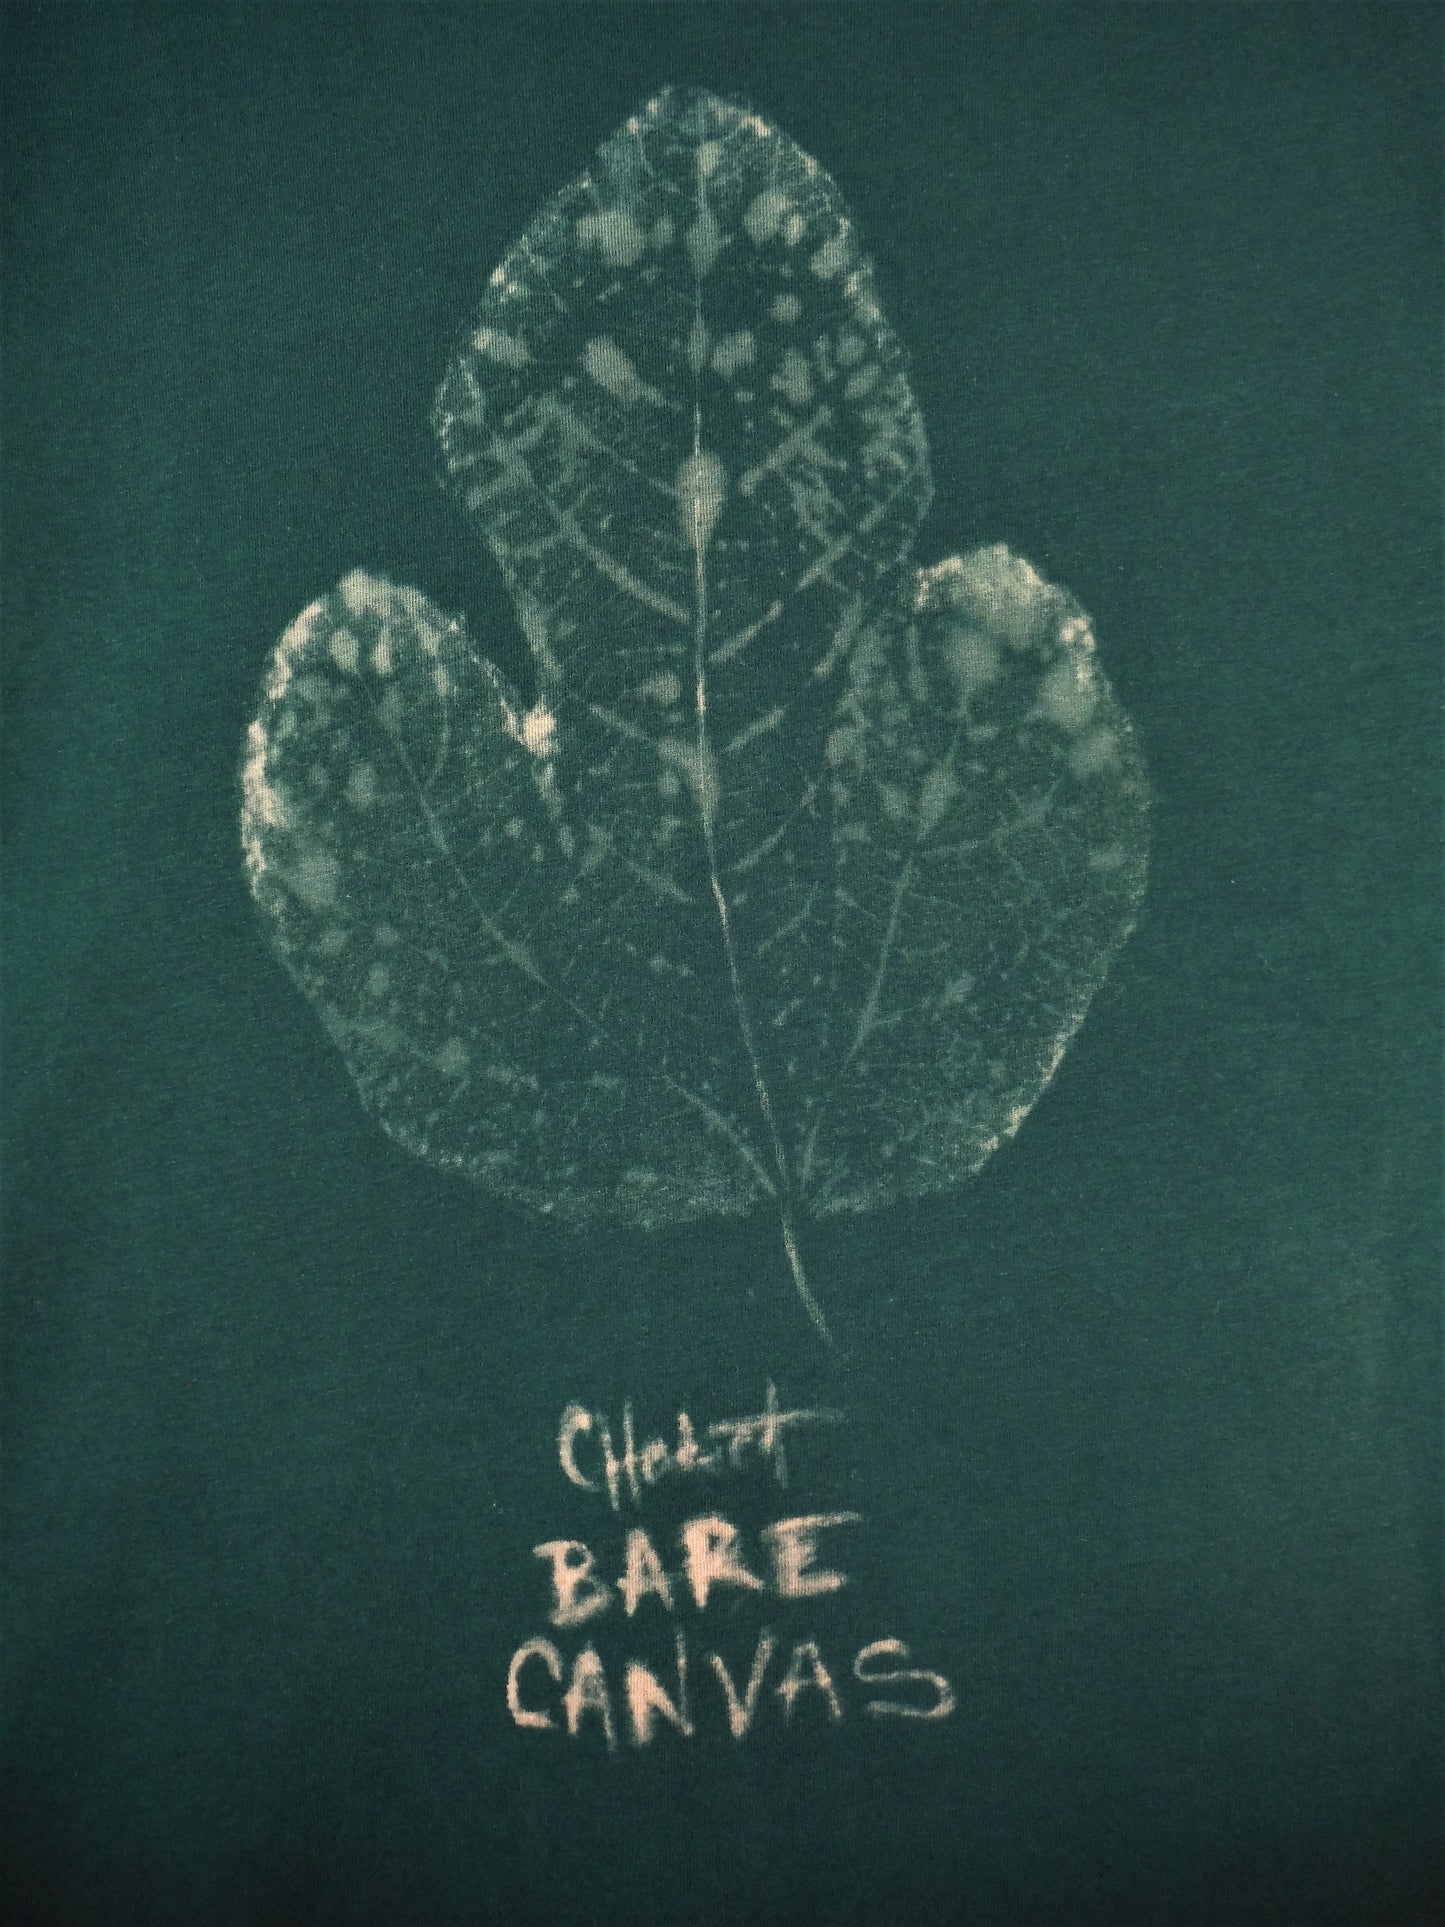 Camiseta De Algodón Orgánico Estampada A Mano Con Hojas - Verde Bosque L